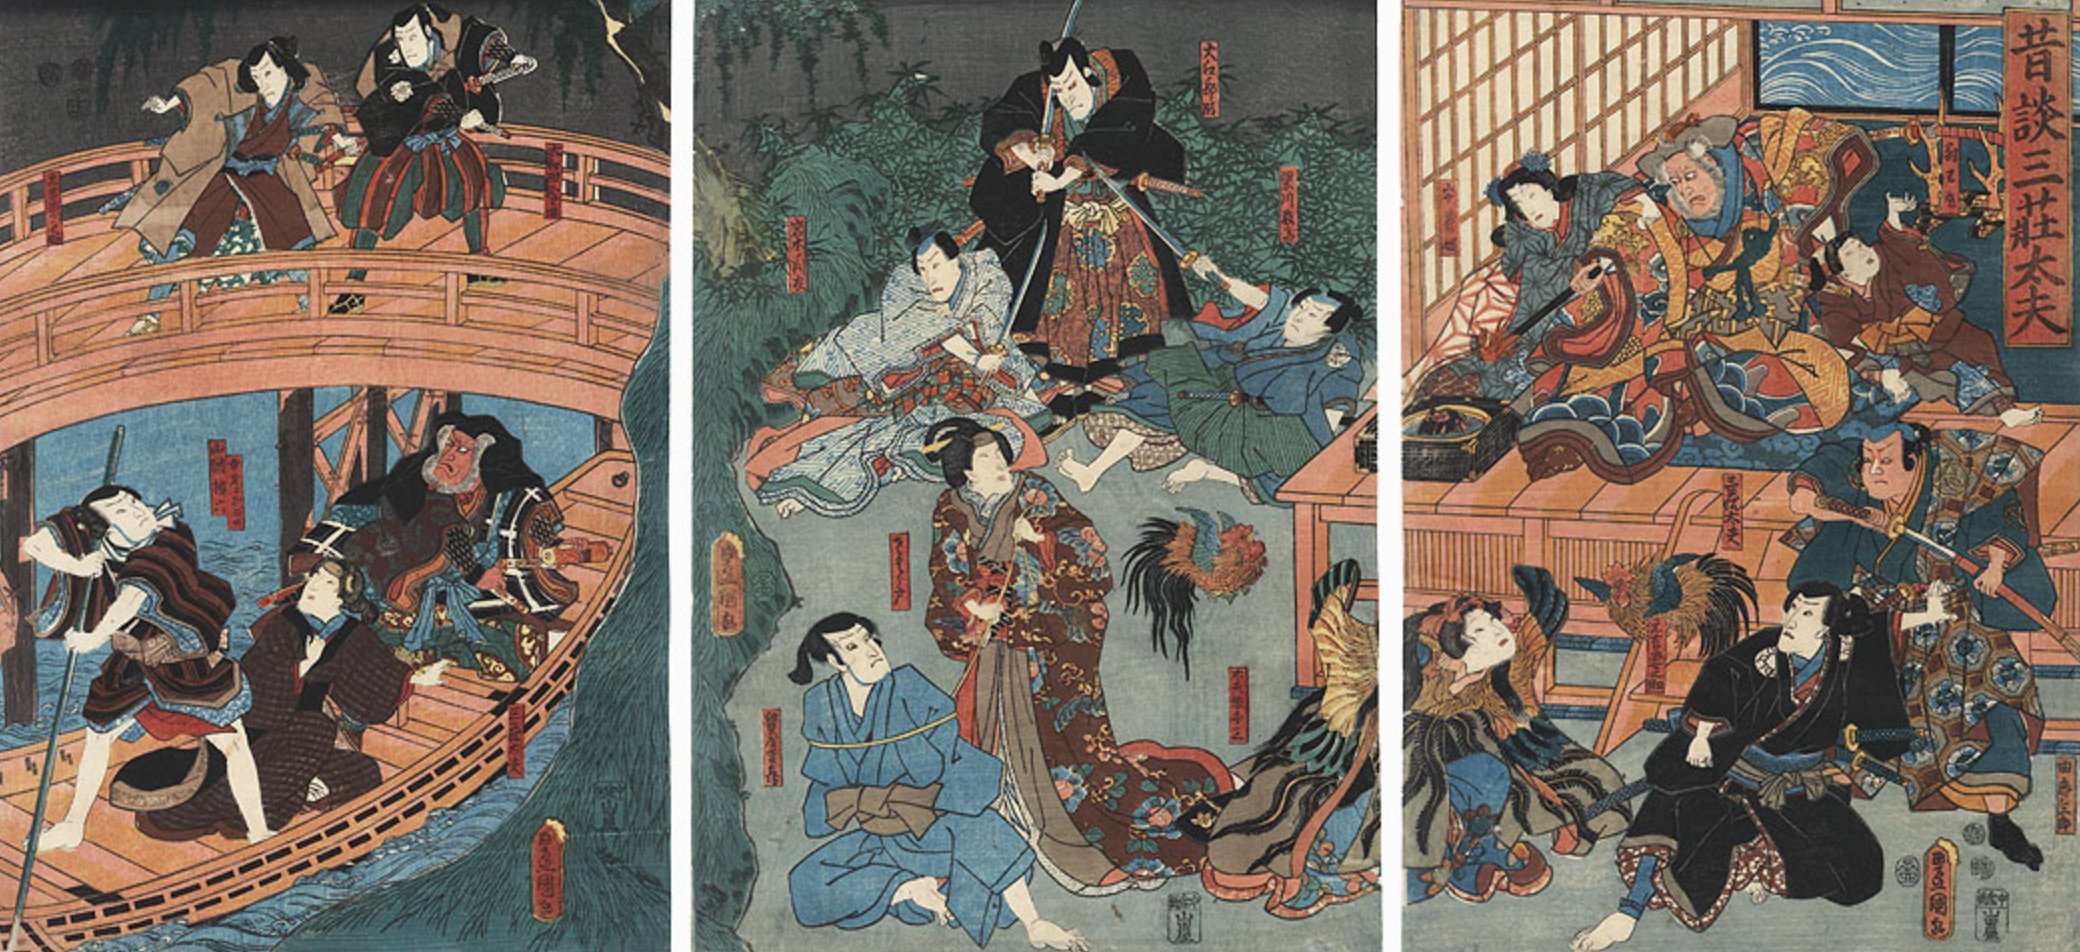 drzeworyt Tokoyuni III / Kunisada "Sansho dayu" (1852)